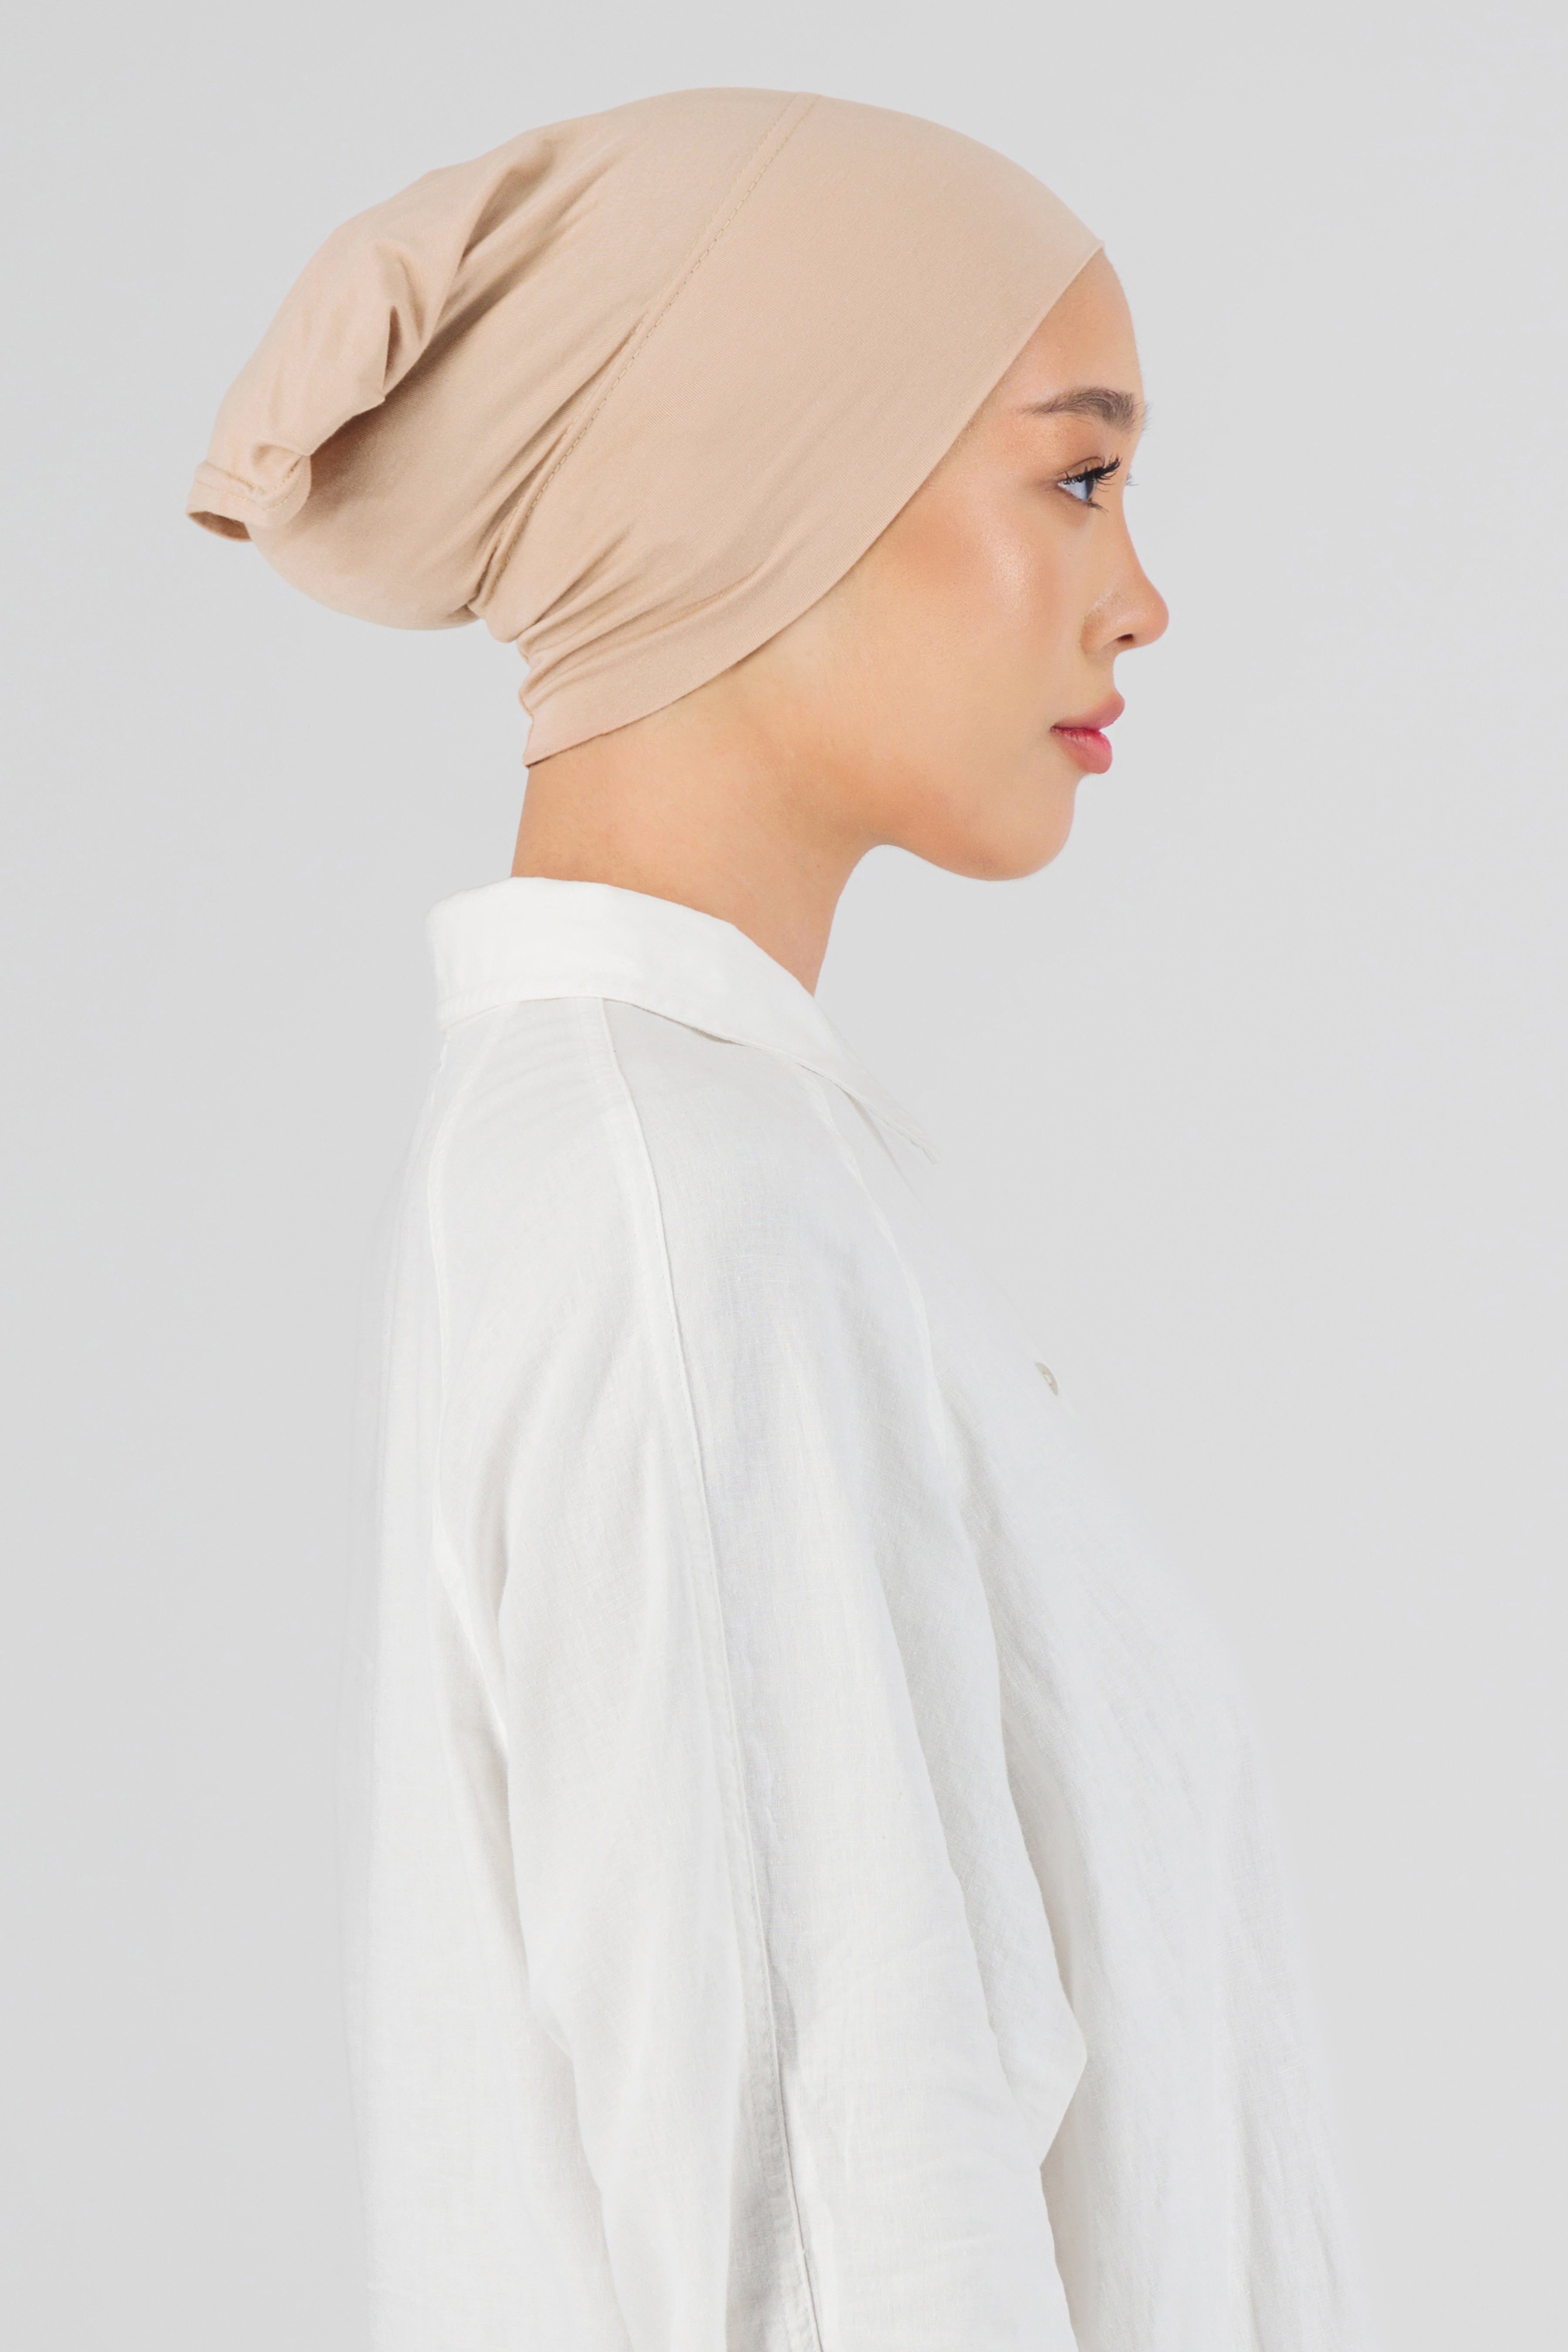 AE - Matching Chiffon Hijab Set - Peaches